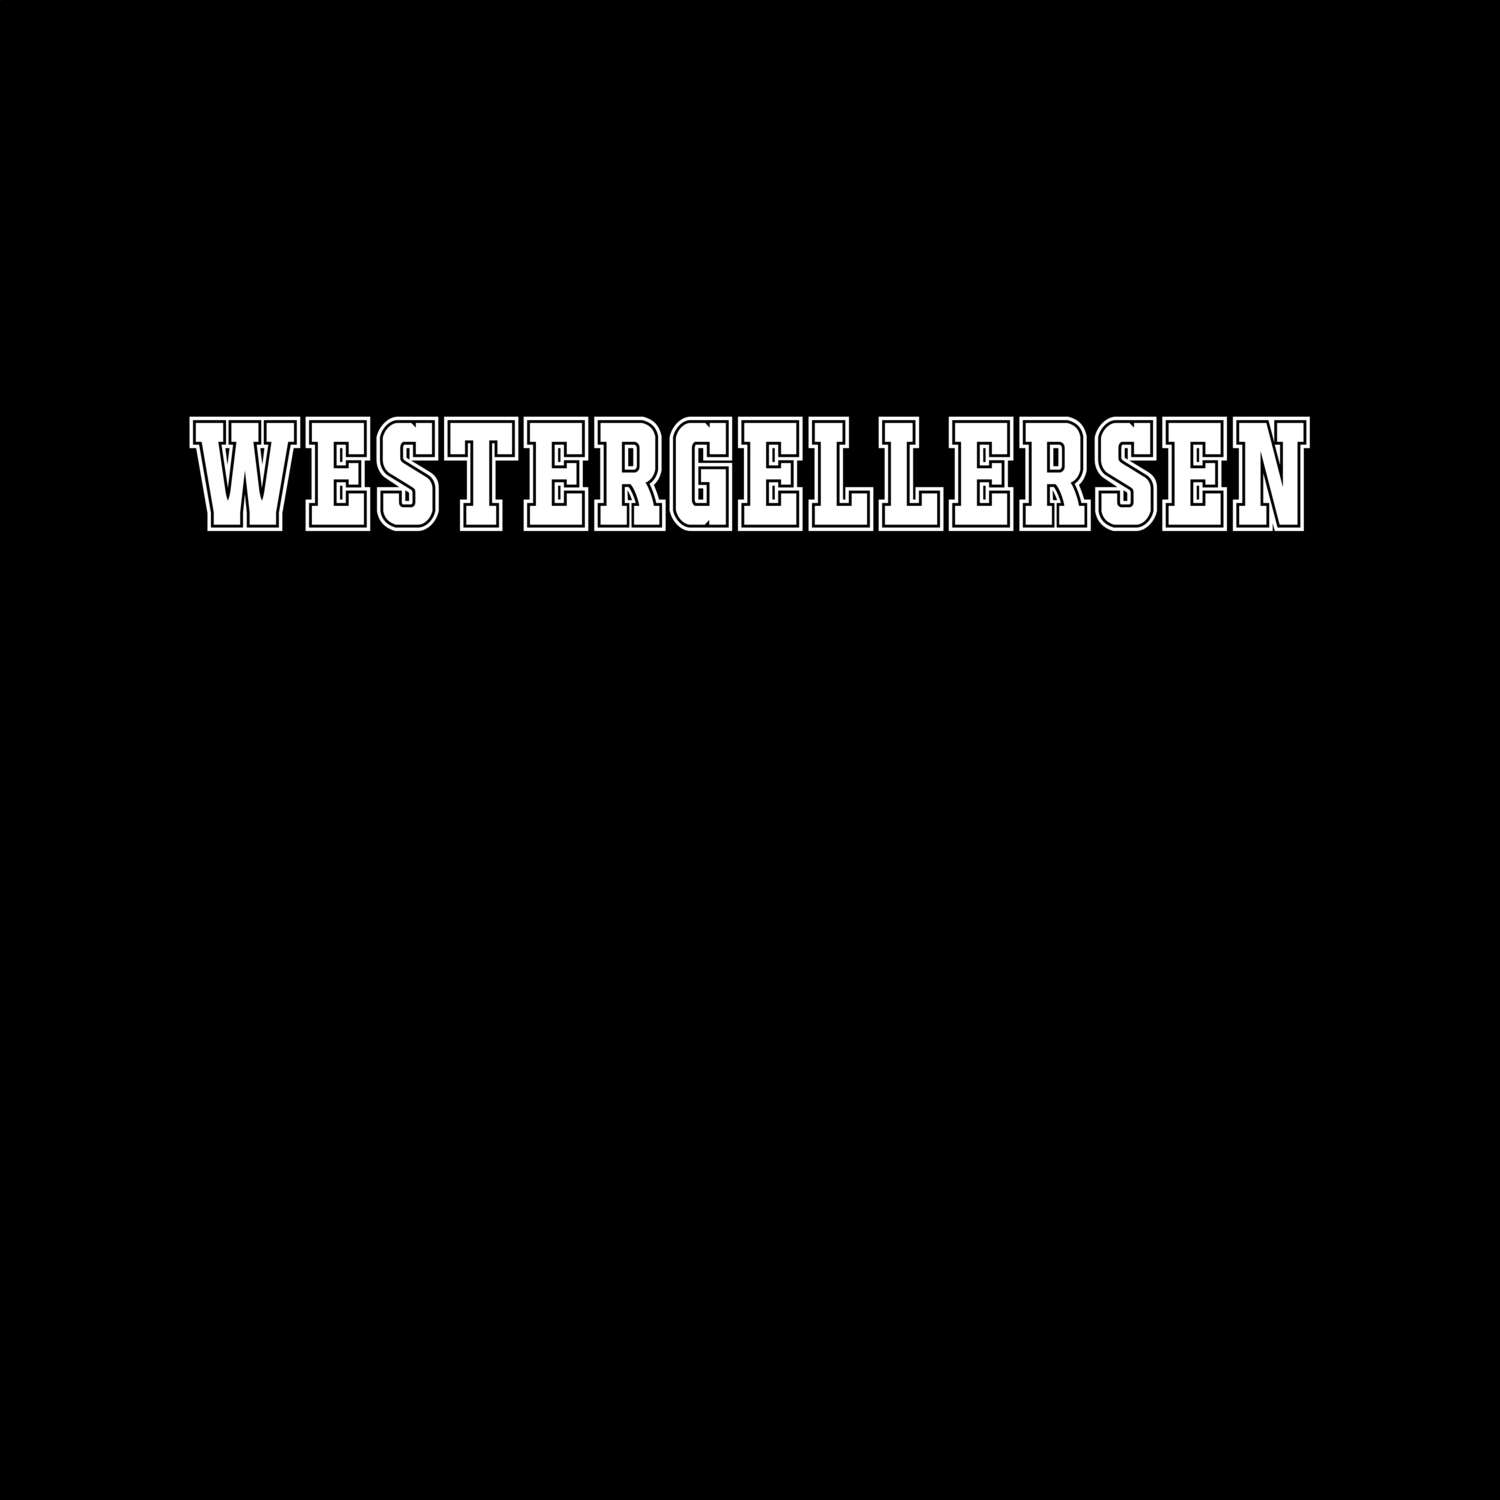 Westergellersen T-Shirt »Classic«